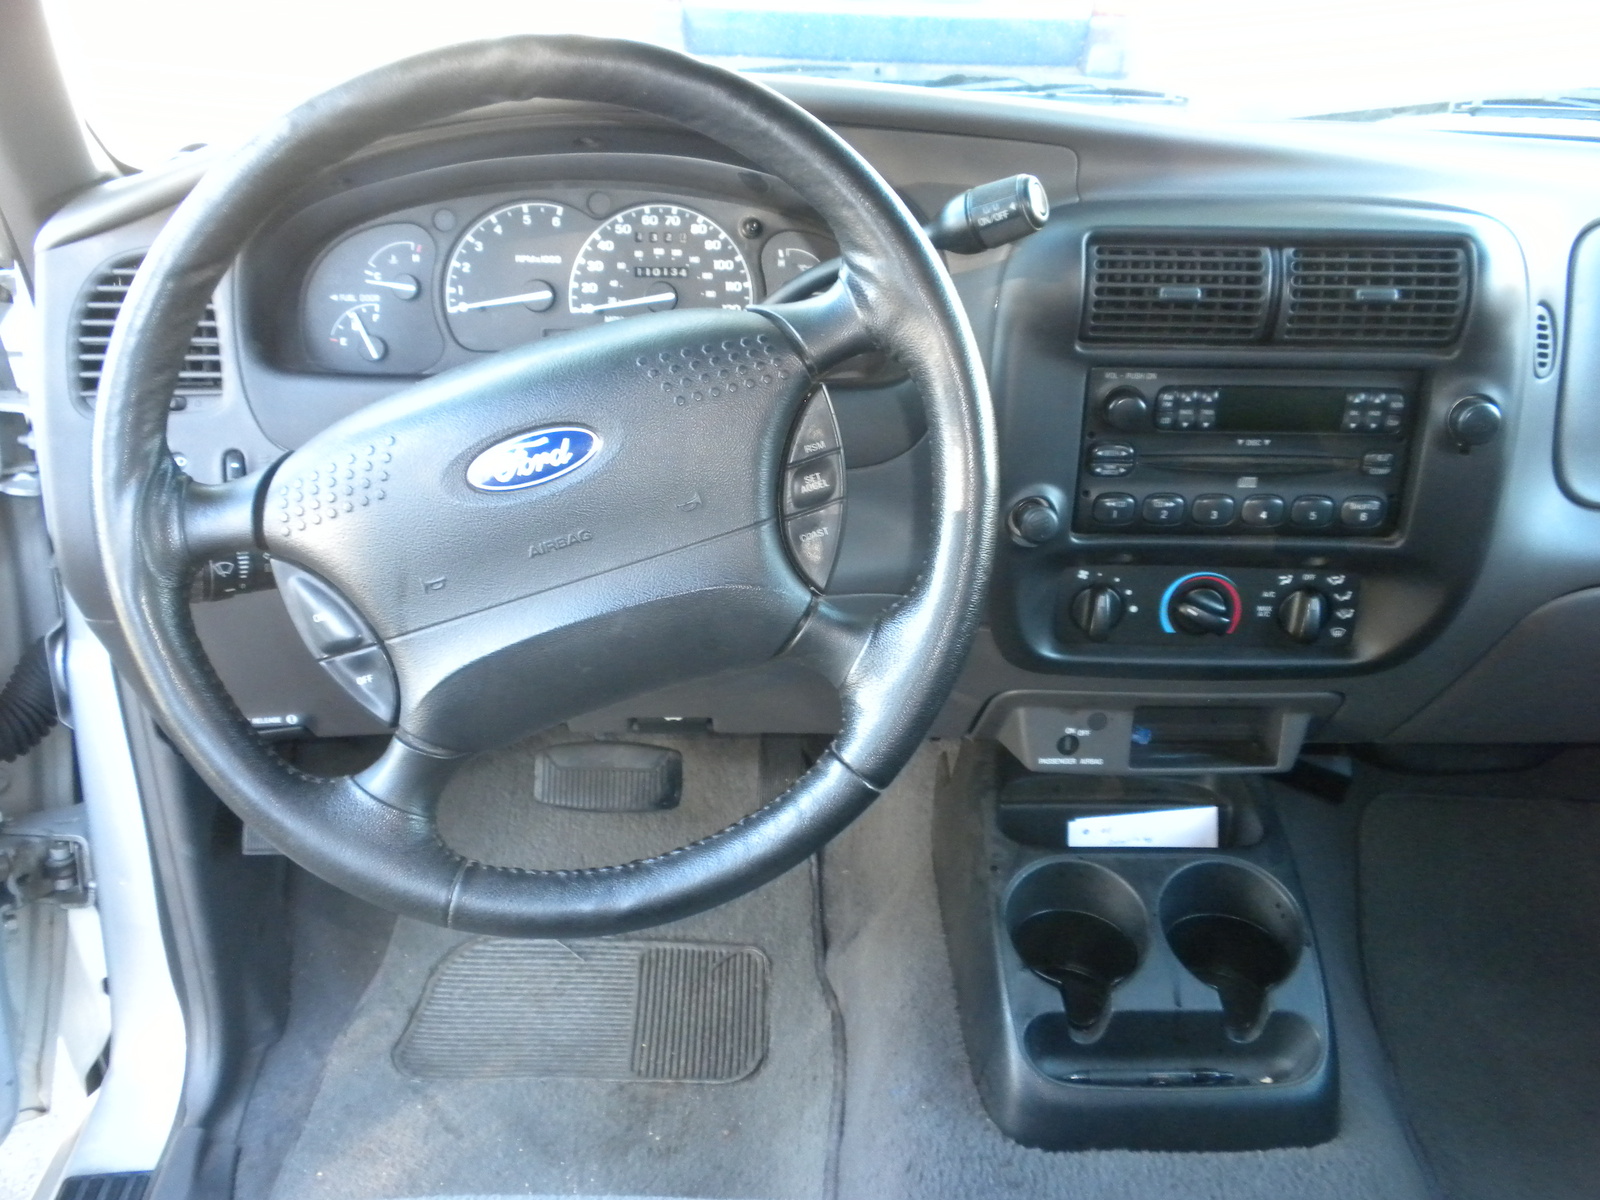 2001 Ford ranger xlt interior #5